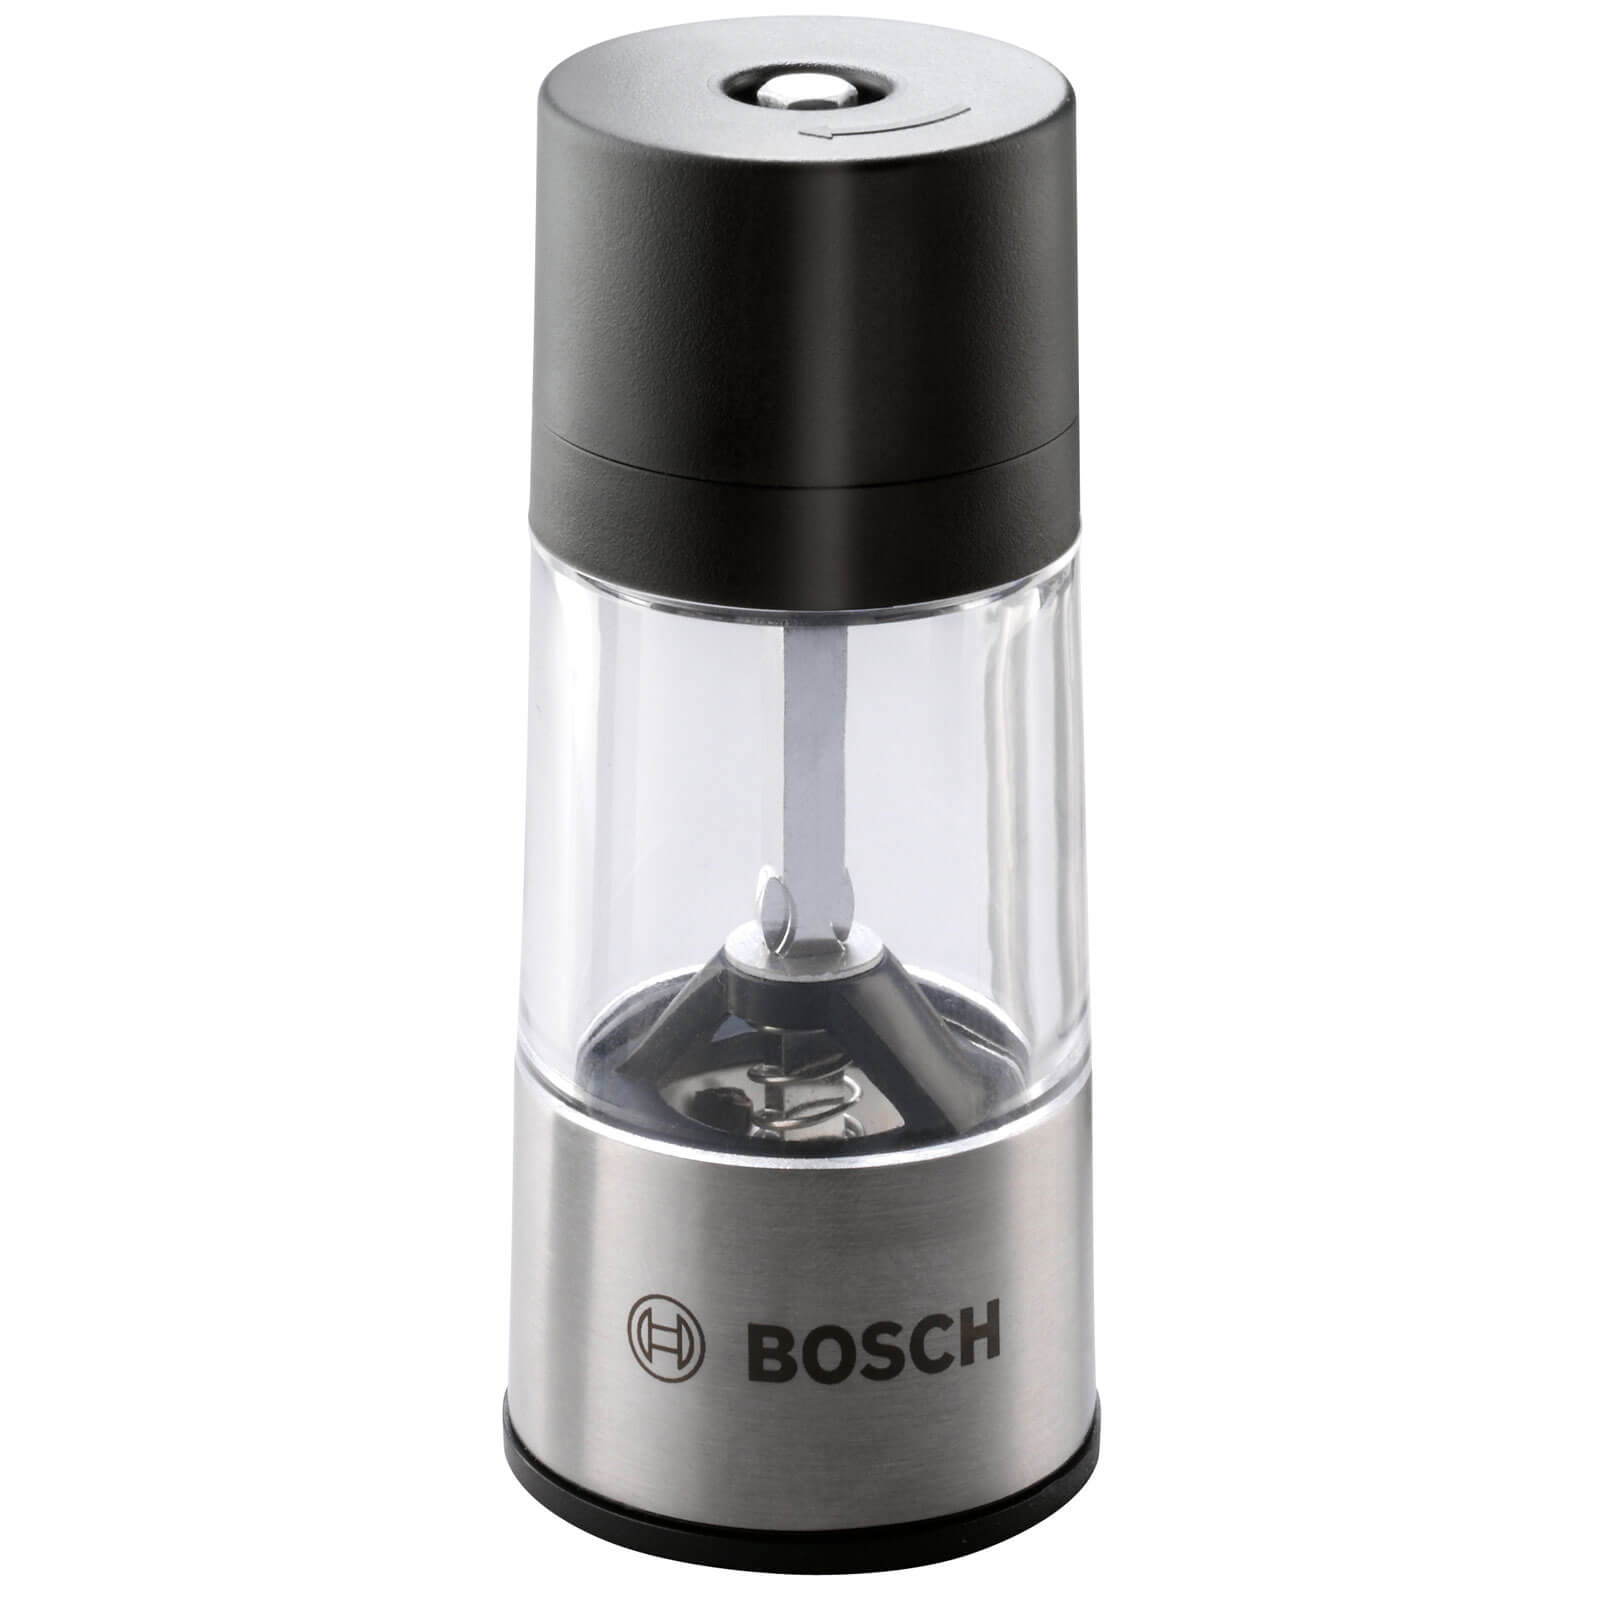 Image of Bosch IXO BBQ Spice Mill Attachment for IXO Screwdrivers